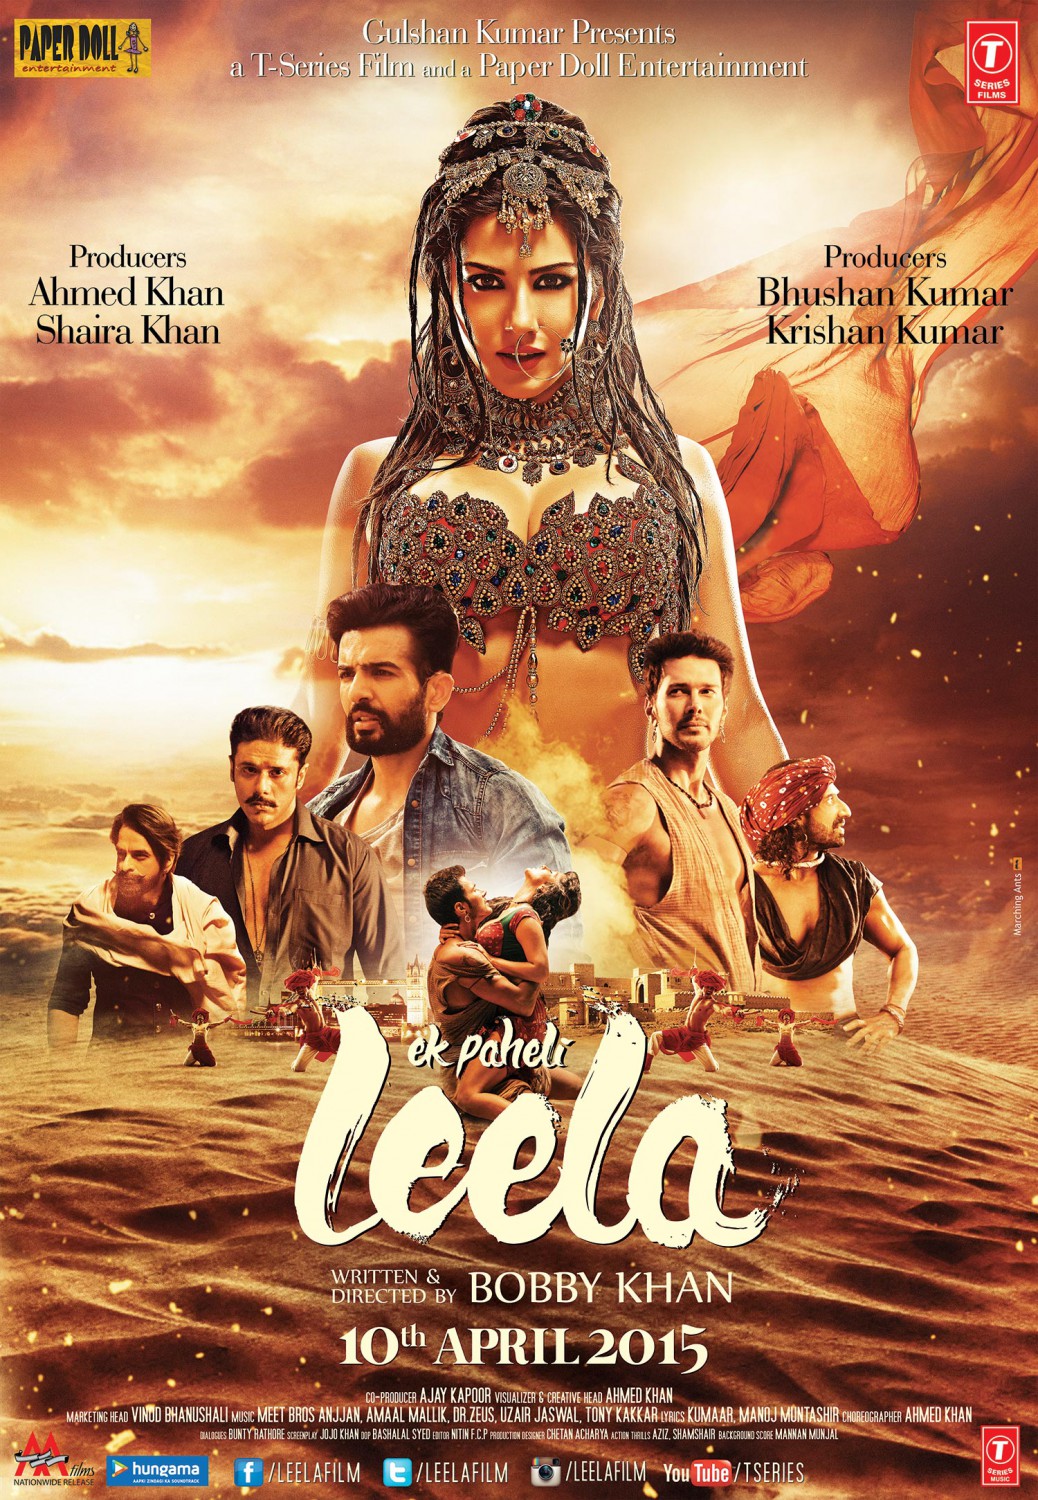 Extra Large Movie Poster Image for Ek Paheli Leela (#3 of 4)